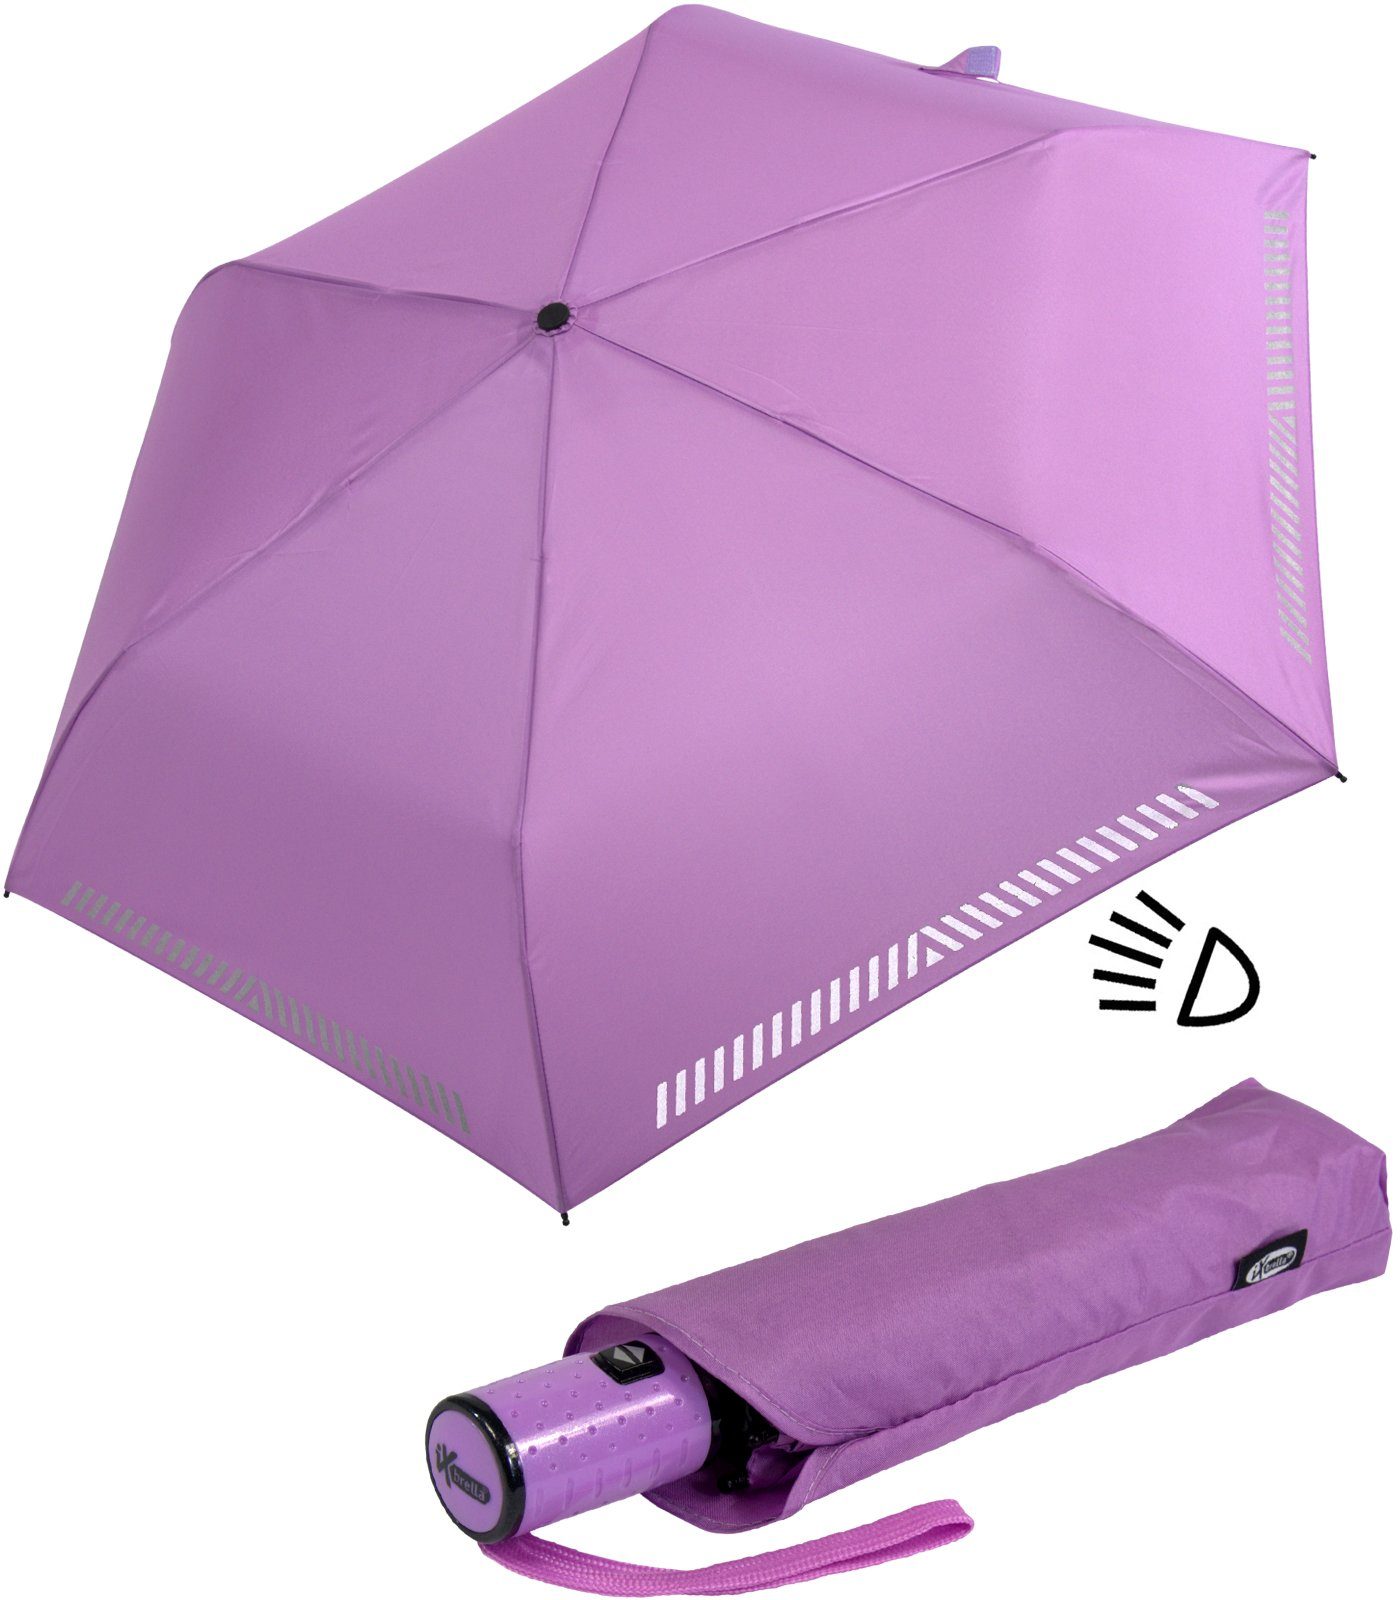 iX-brella Taschenregenschirm Kinderschirm mit Auf-Zu-Automatik, reflektierend, Sicherheit durch Reflex-Streifen - hell-lila